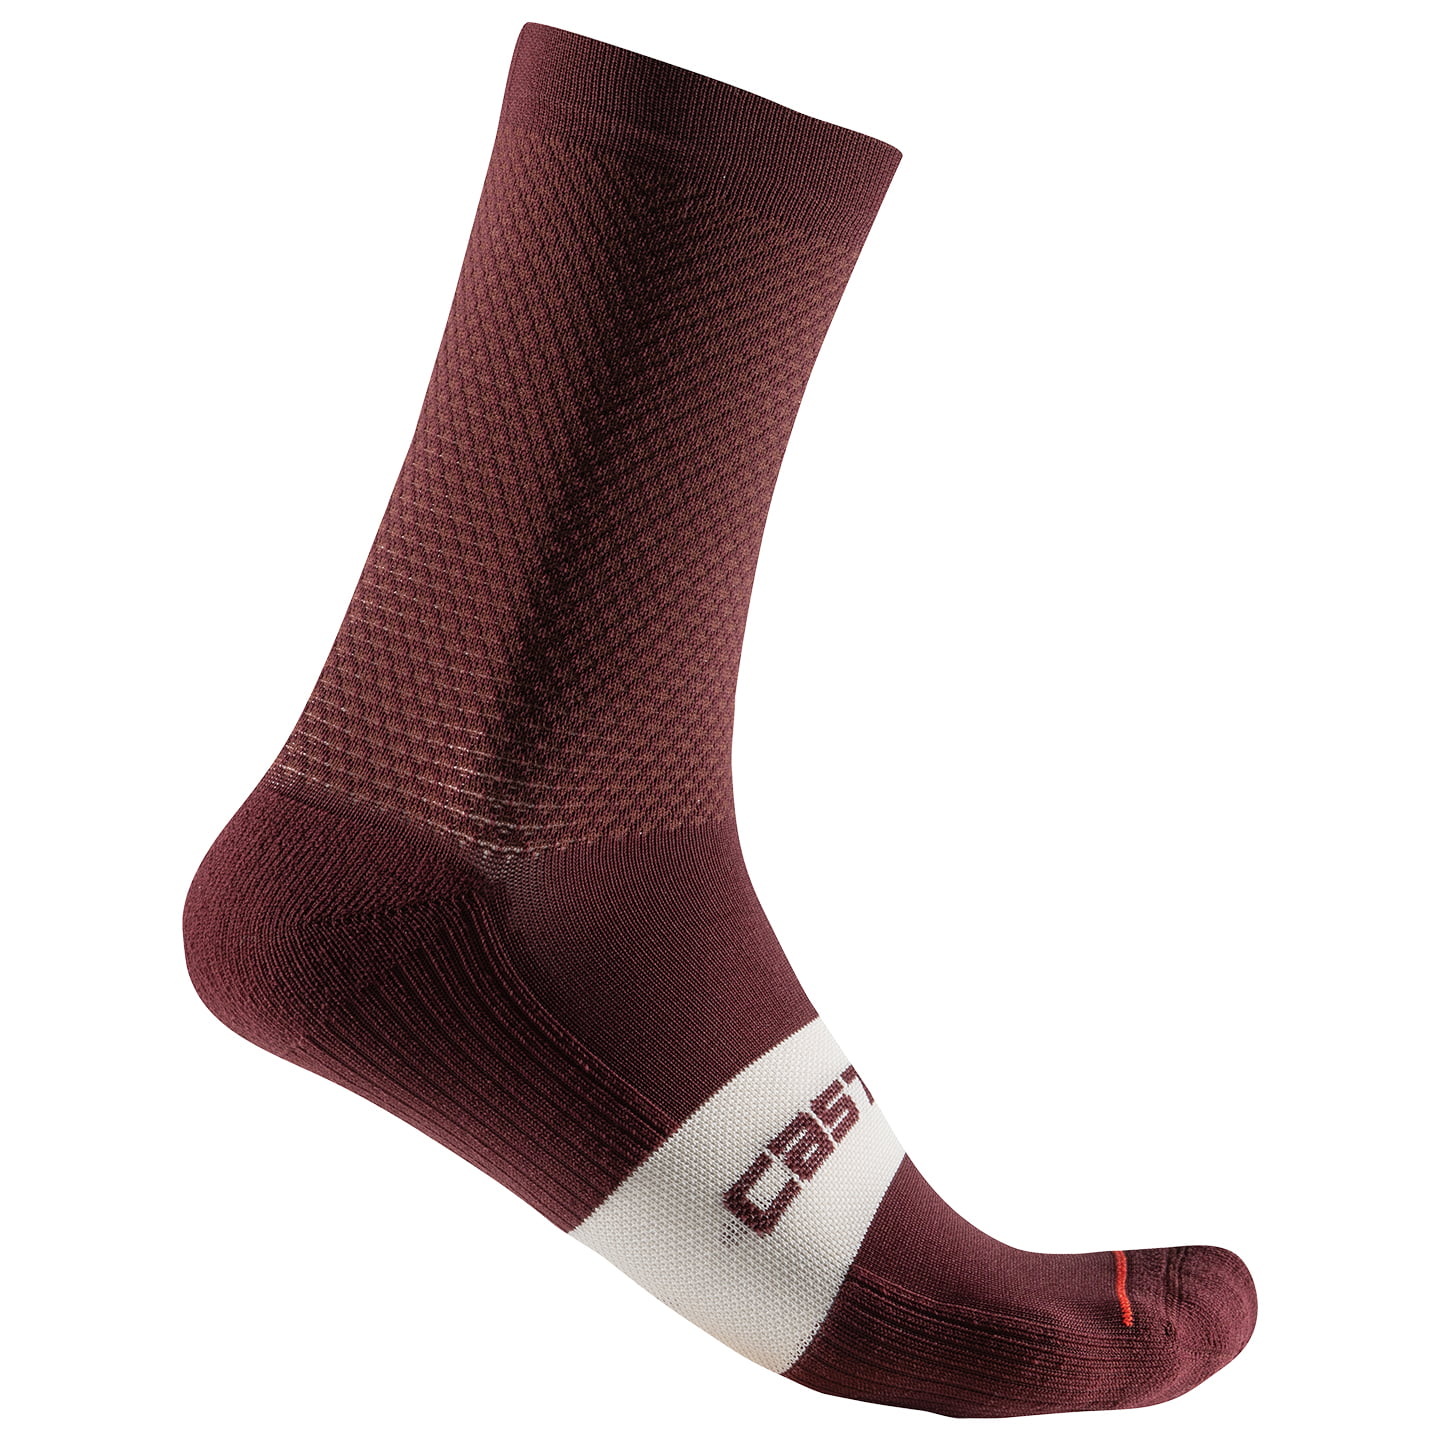 CASTELLI Espresso 15 Cycling Socks, for men, size 2XL, MTB socks, Cycling clothing